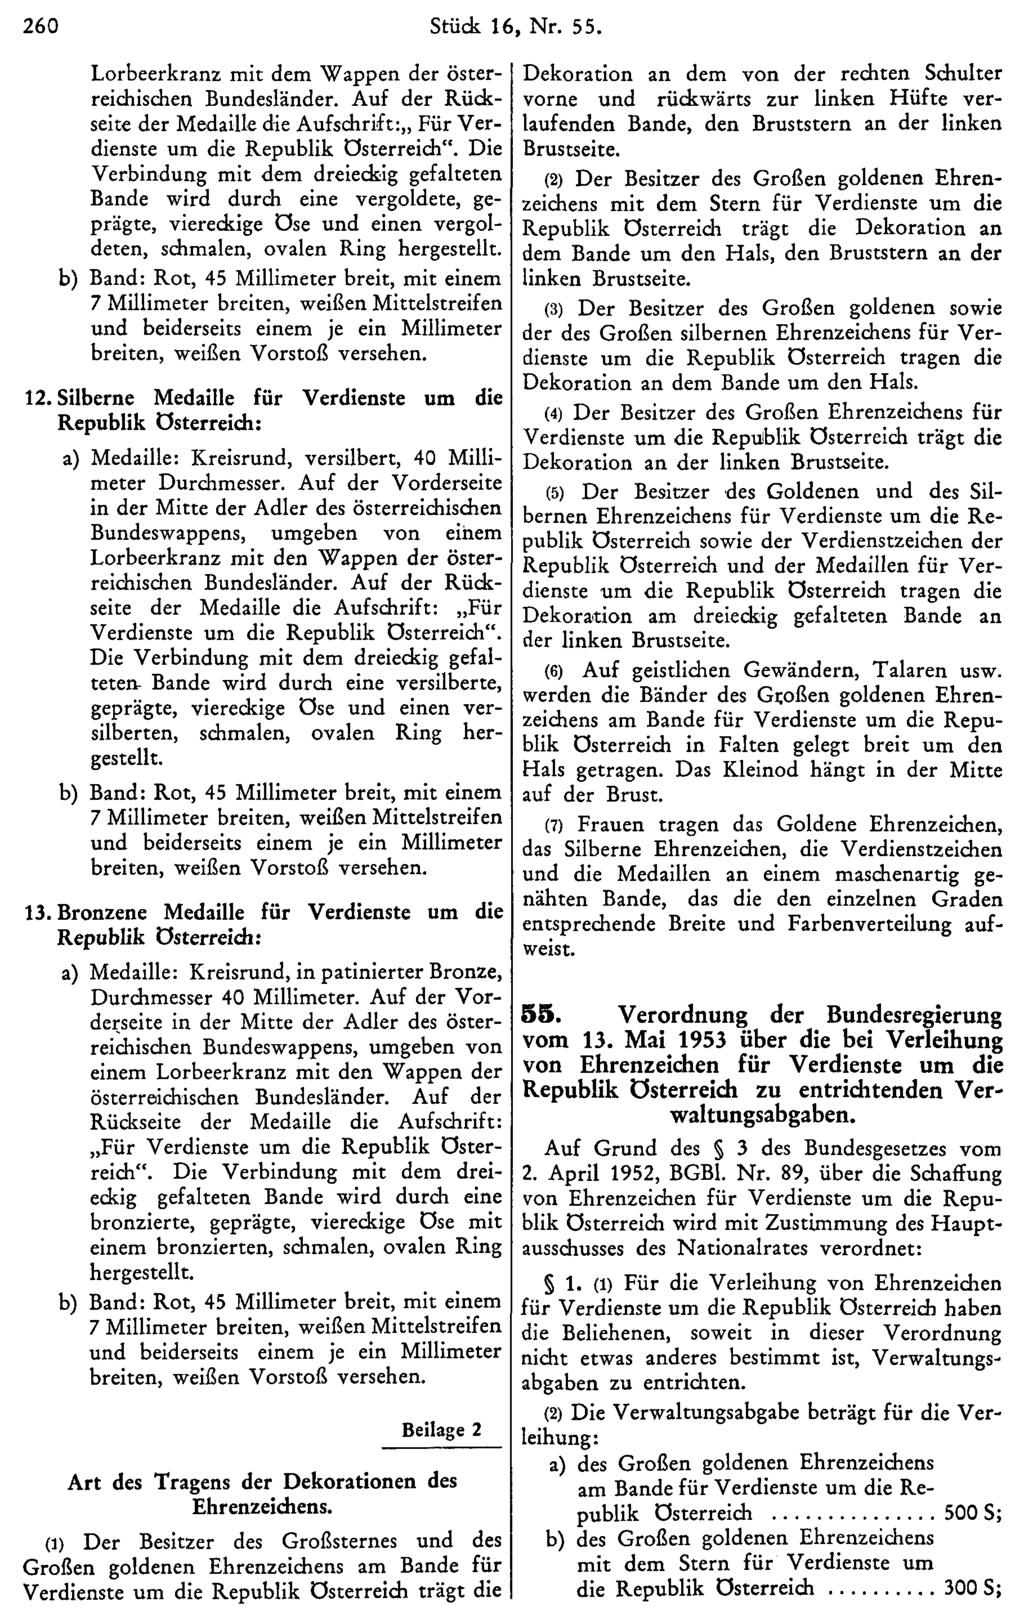 260 Stück 16, Nr. 55. Lorbeerkranz mit dem Wappen der österreichischen Bundesländer. Auf der Rückseite der Medaille die Aufschrift: Für Verdienste um die Republik Österreich".